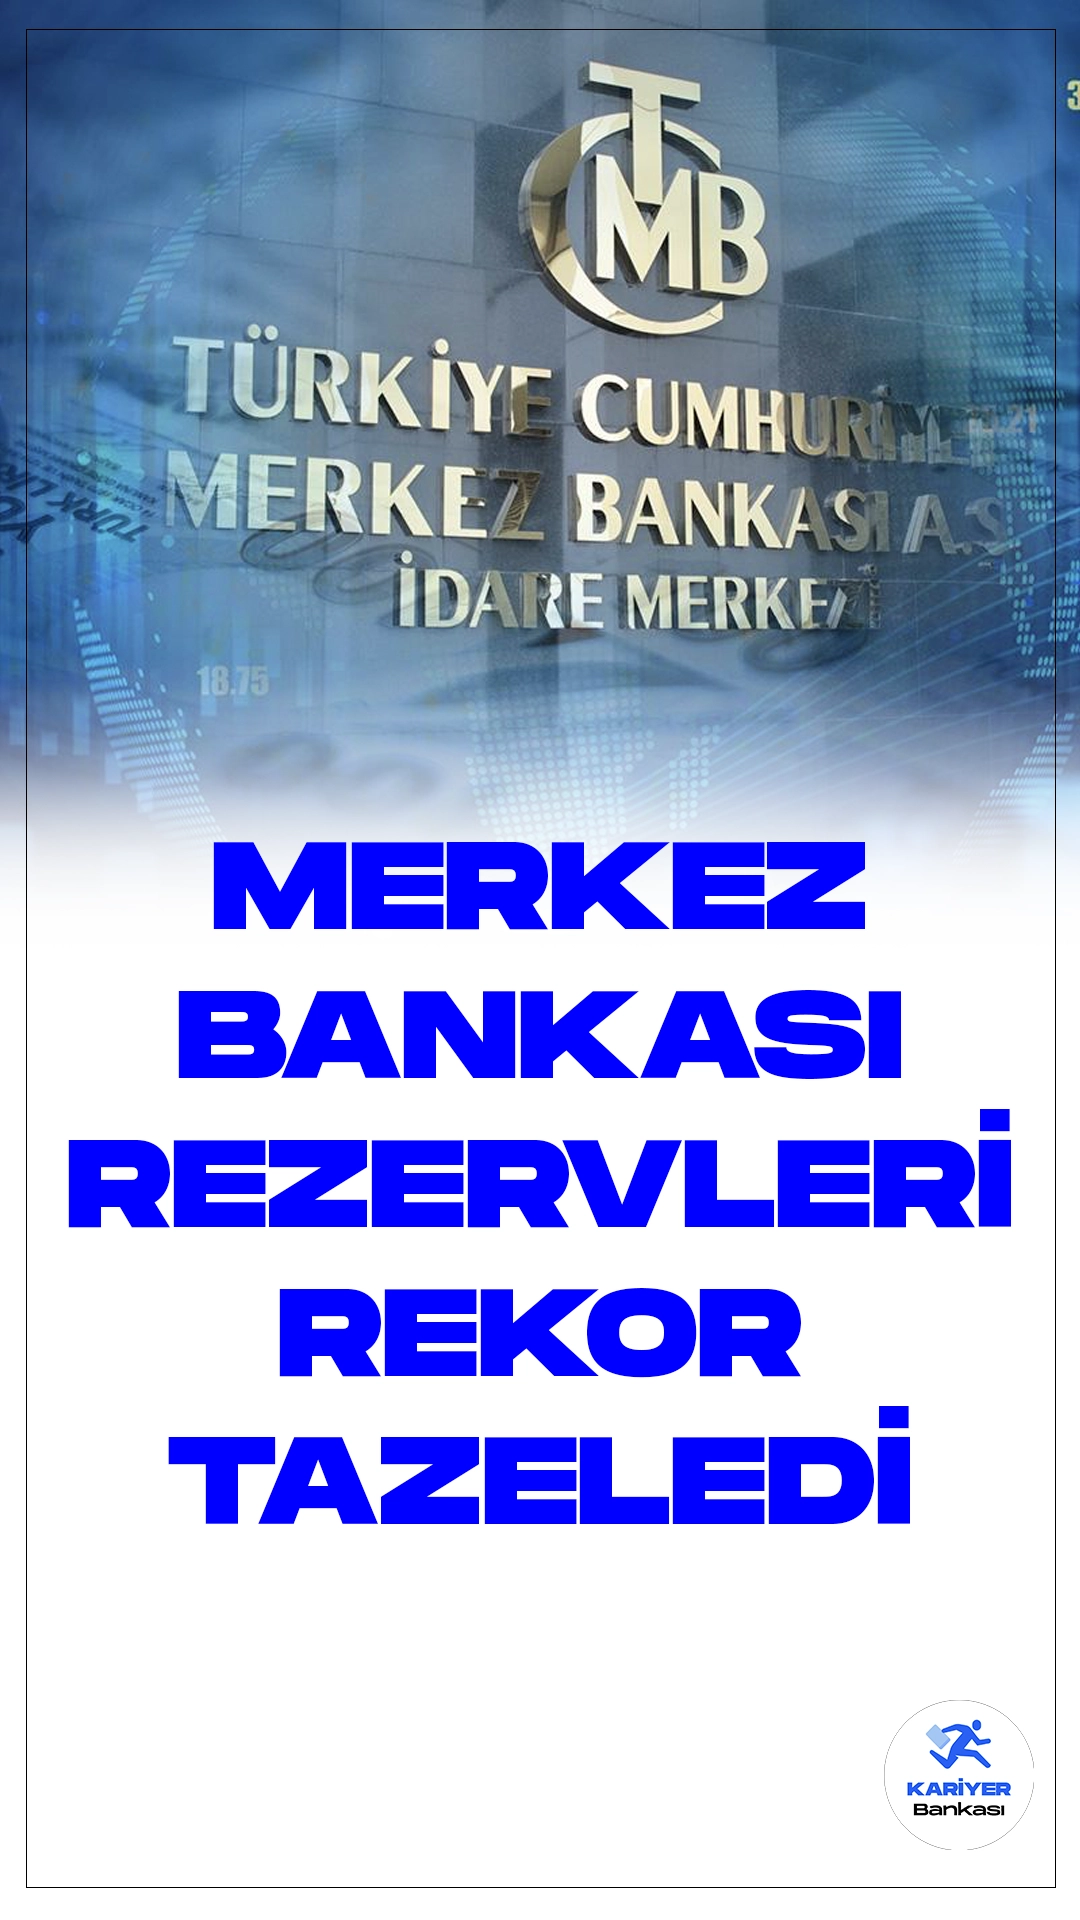 Türkiye Cumhuriyet Merkez Bankası Rezervleri Tarihi Zirveye Ulaştı.Türkiye Cumhuriyet Merkez Bankası (TCMB), haftalık para ve banka istatistikleri raporuyla, 8 Aralık itibarıyla brüt döviz rezervlerinin tüm zamanların en yüksek seviyesine ulaştığını duyurdu. Bu süreçte rezervlerde yaşanan önemli artışlar, ekonomi gündemine damgasını vurdu.